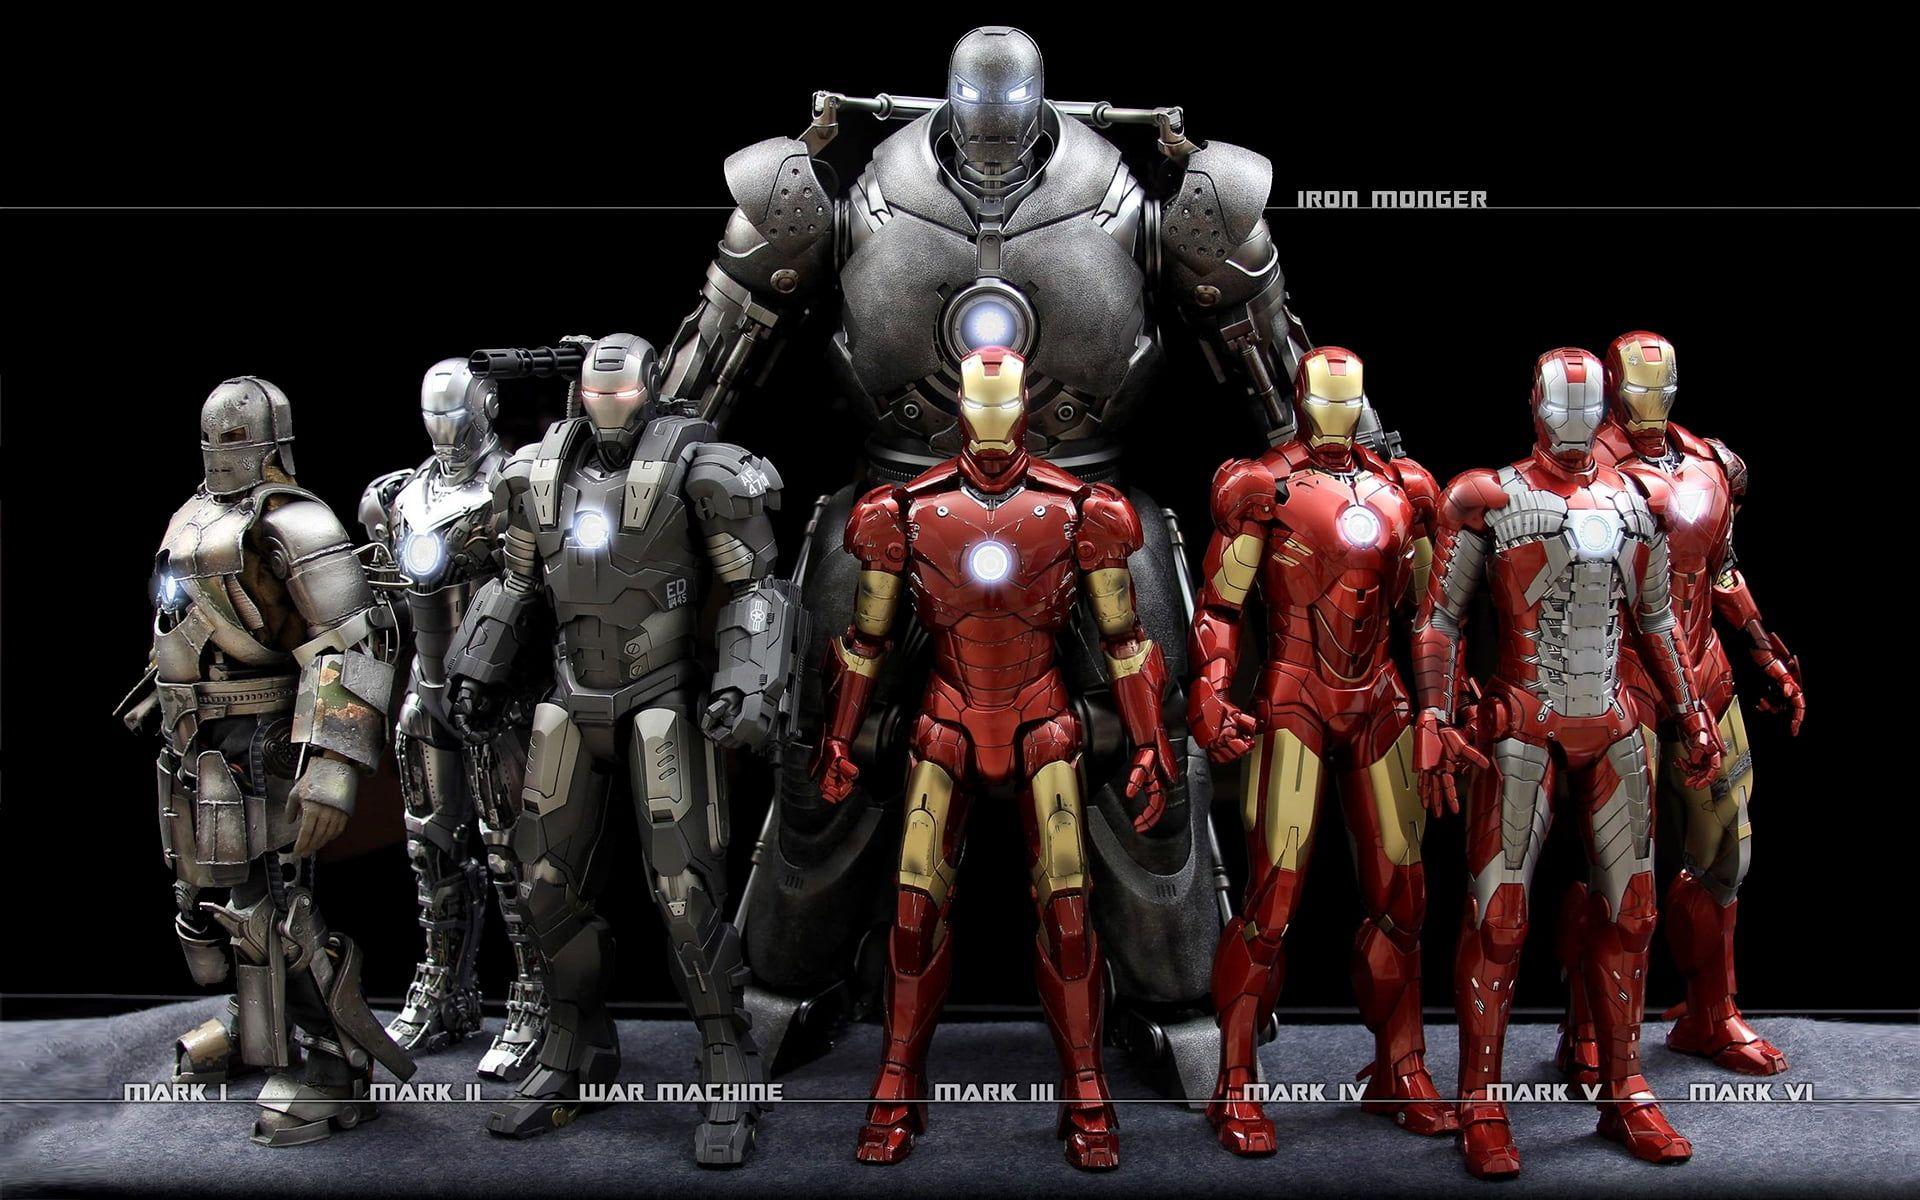 Every Iron Man Armor